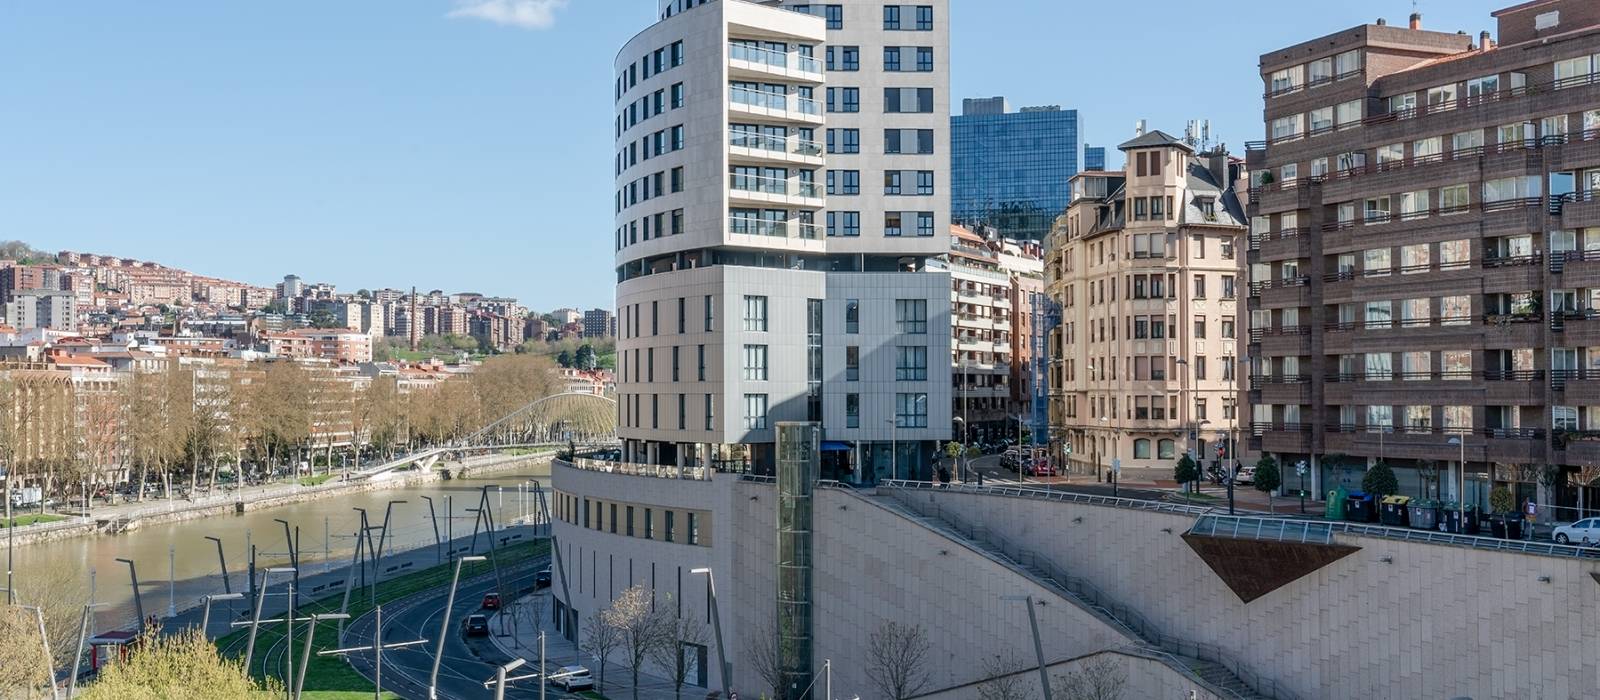 Hotel Vincci Consulado de Bilbao - Fachada 